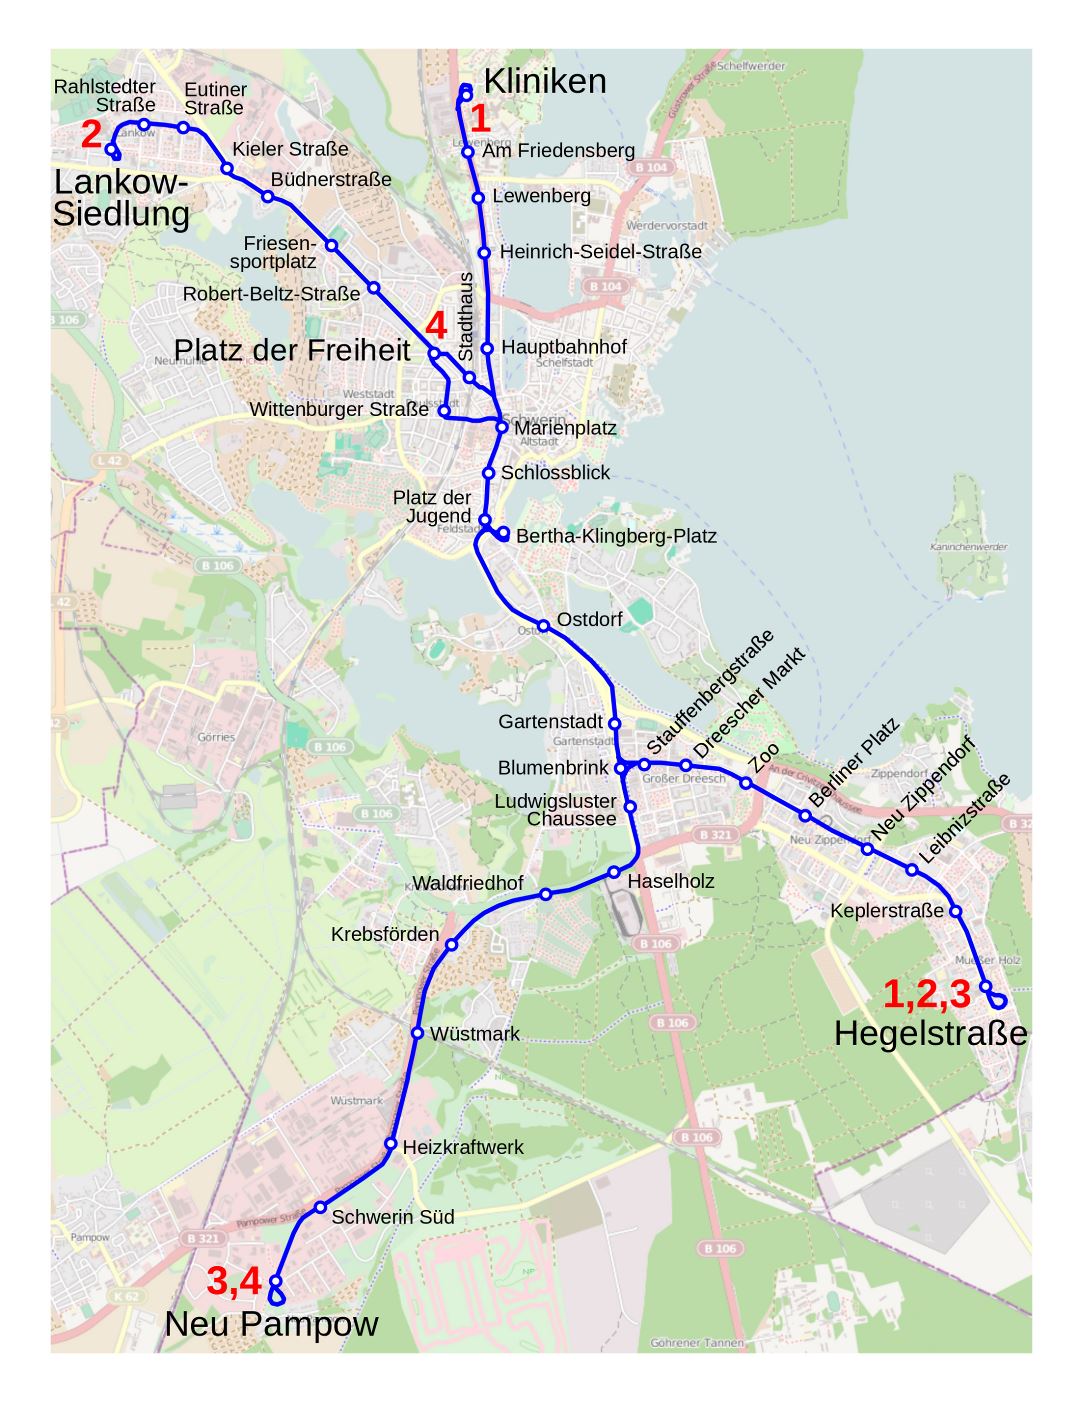 Большая детальная карта трамваев города Шверин